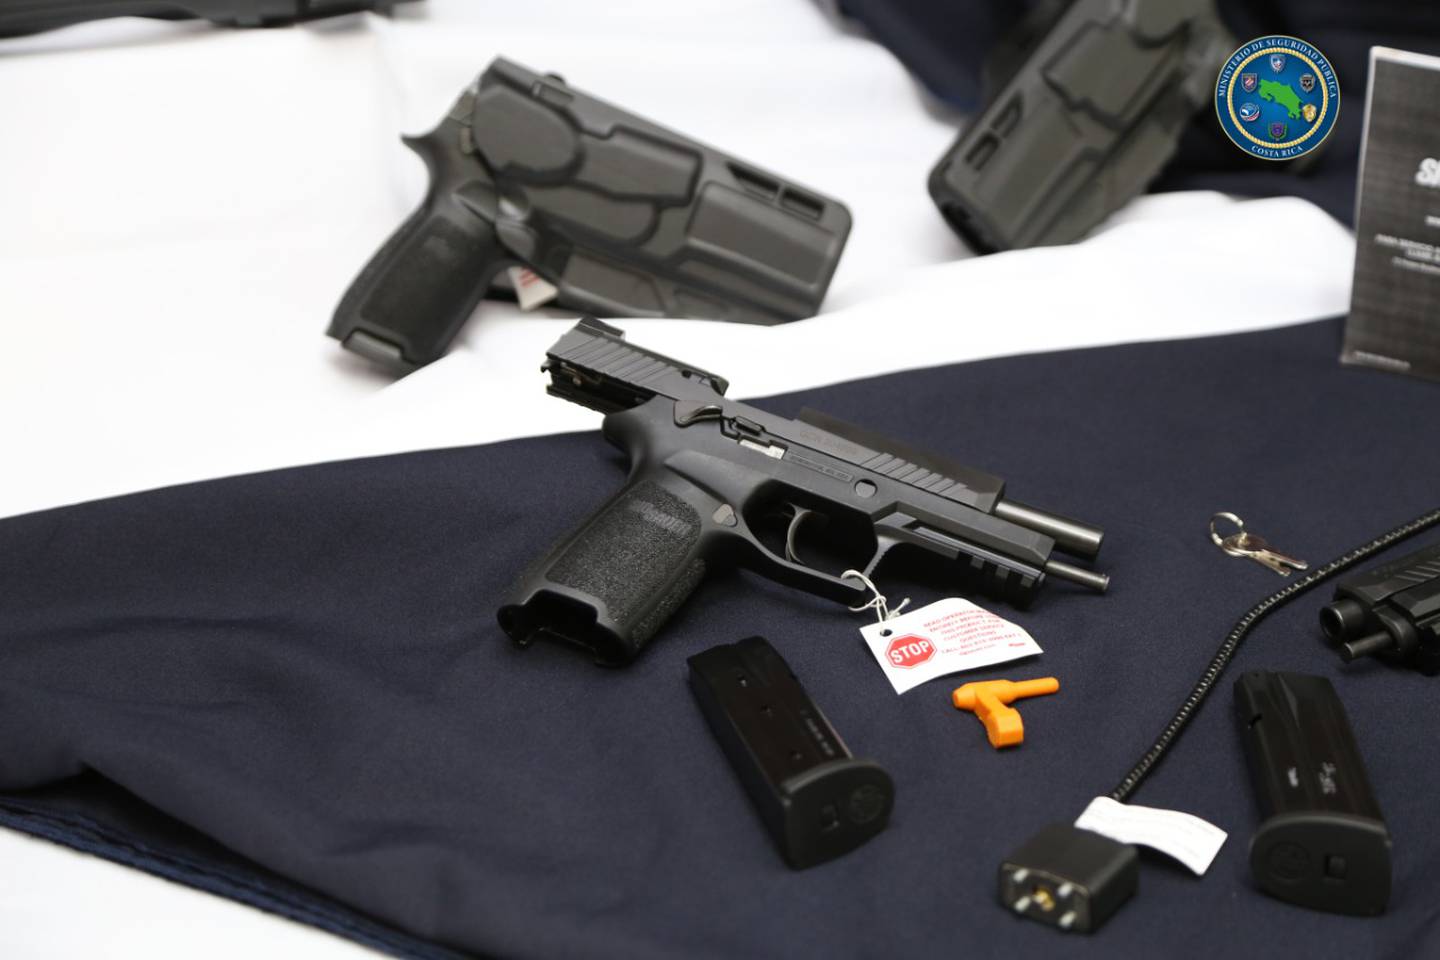 El peso, diseño y funcionalidad  de las nuevas pistolas que adquirió la Fuerza Pública, se adaptan a las condiciones que la policía requiere. Foto: Cortesía MSP.